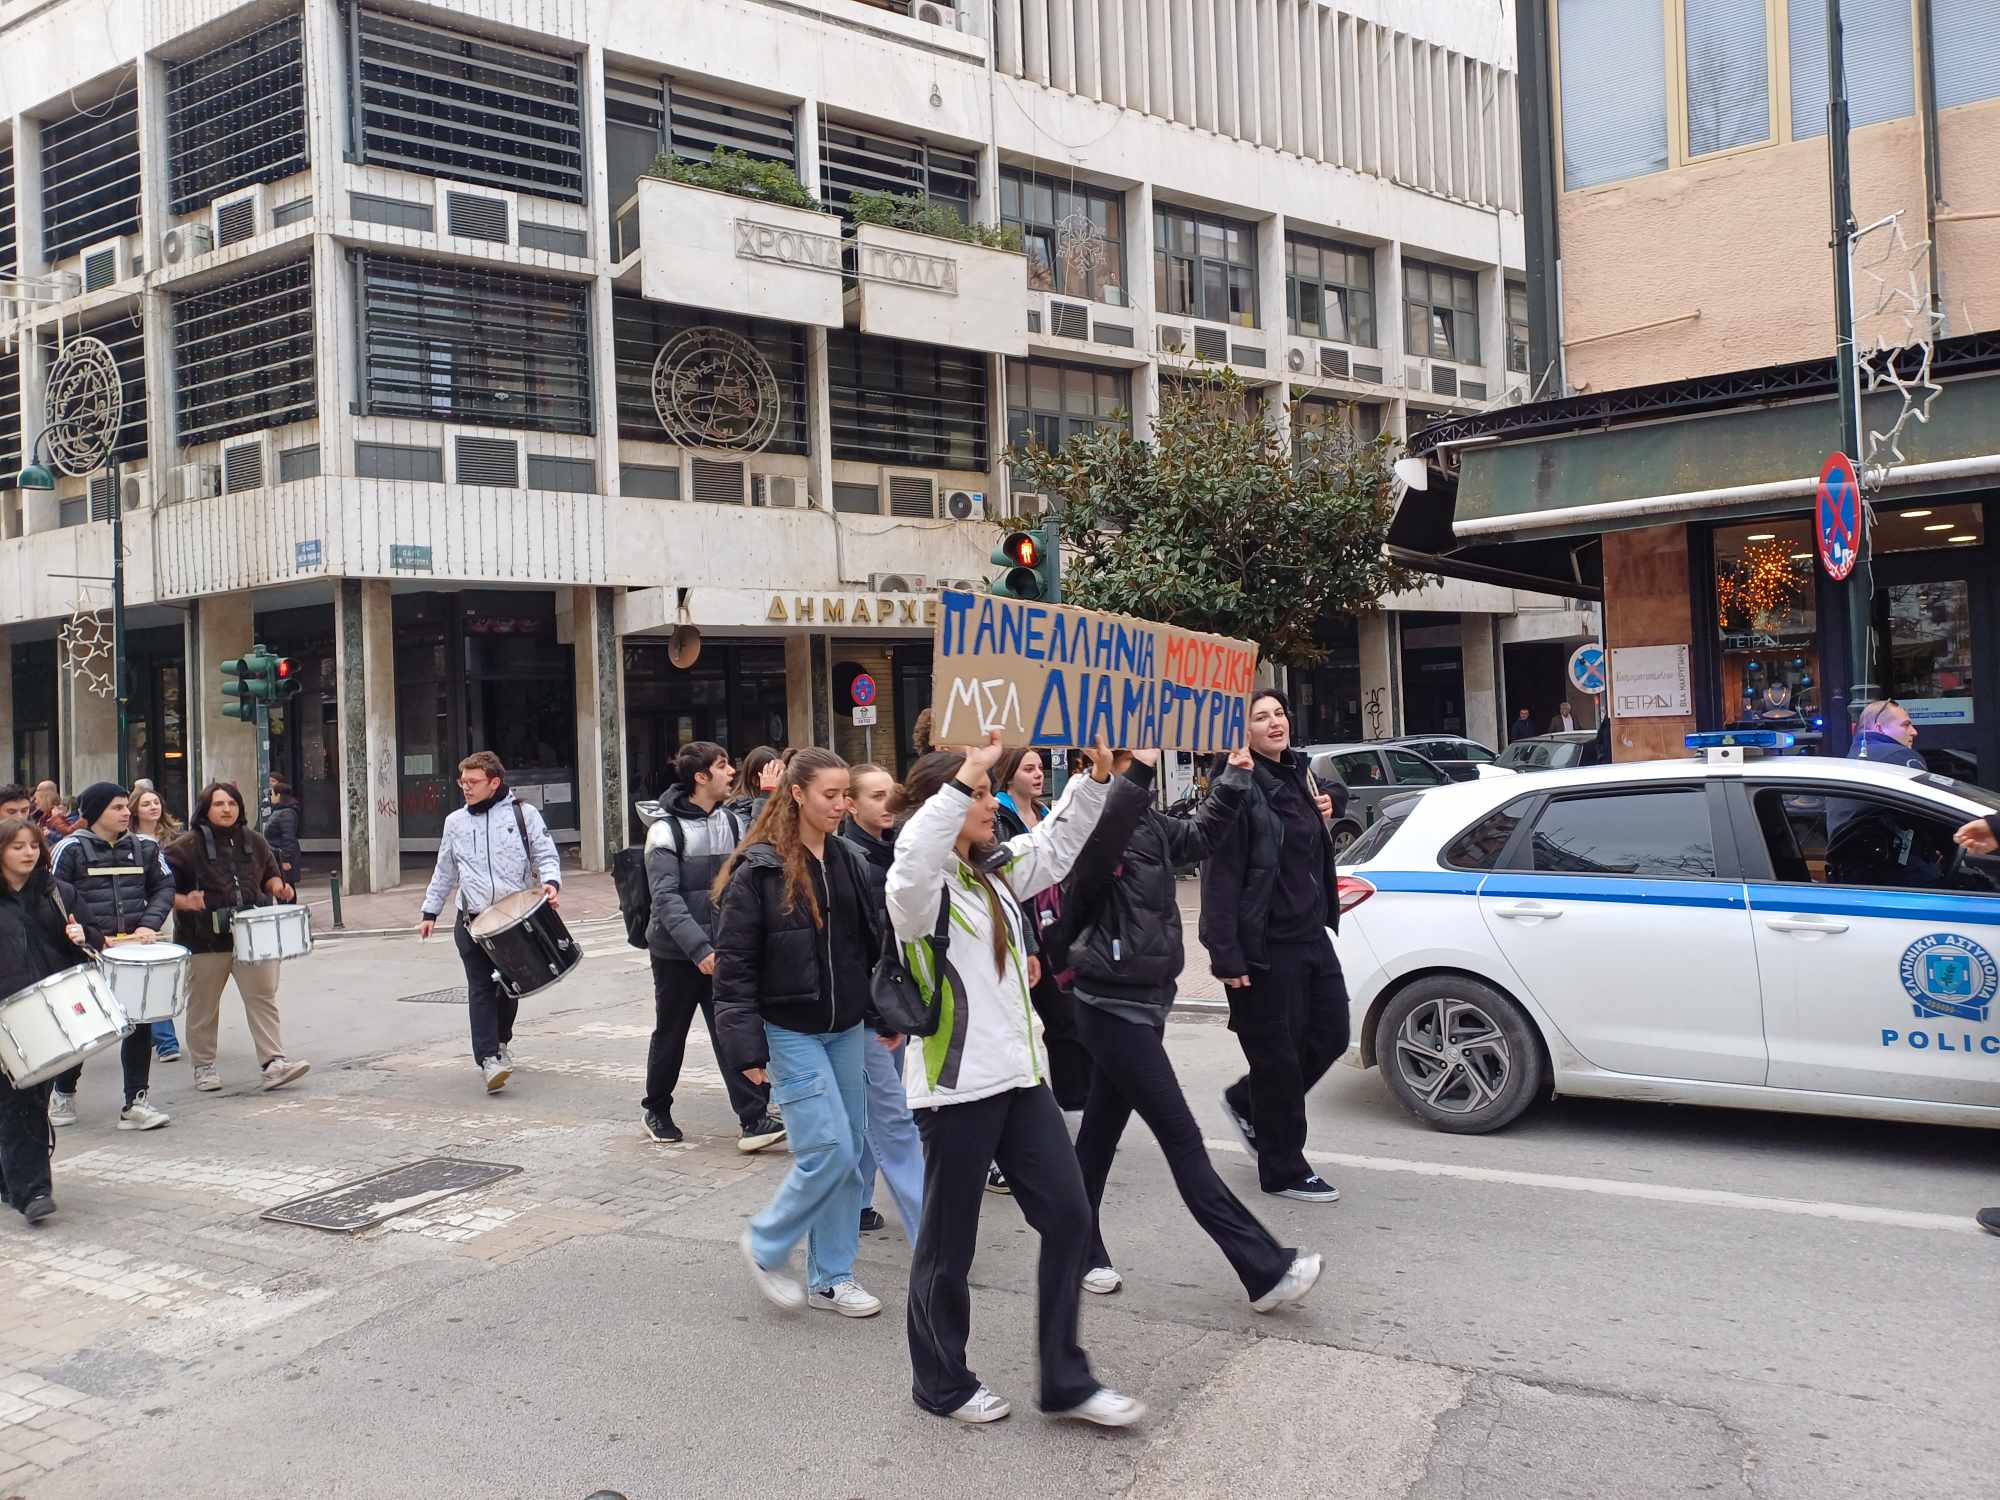 Ξεσήκωσαν το κέντρο της Λάρισας με ταμπούρλα οι μαθητές του Μουσικού Σχολείου (ΦΩΤΟ+video)